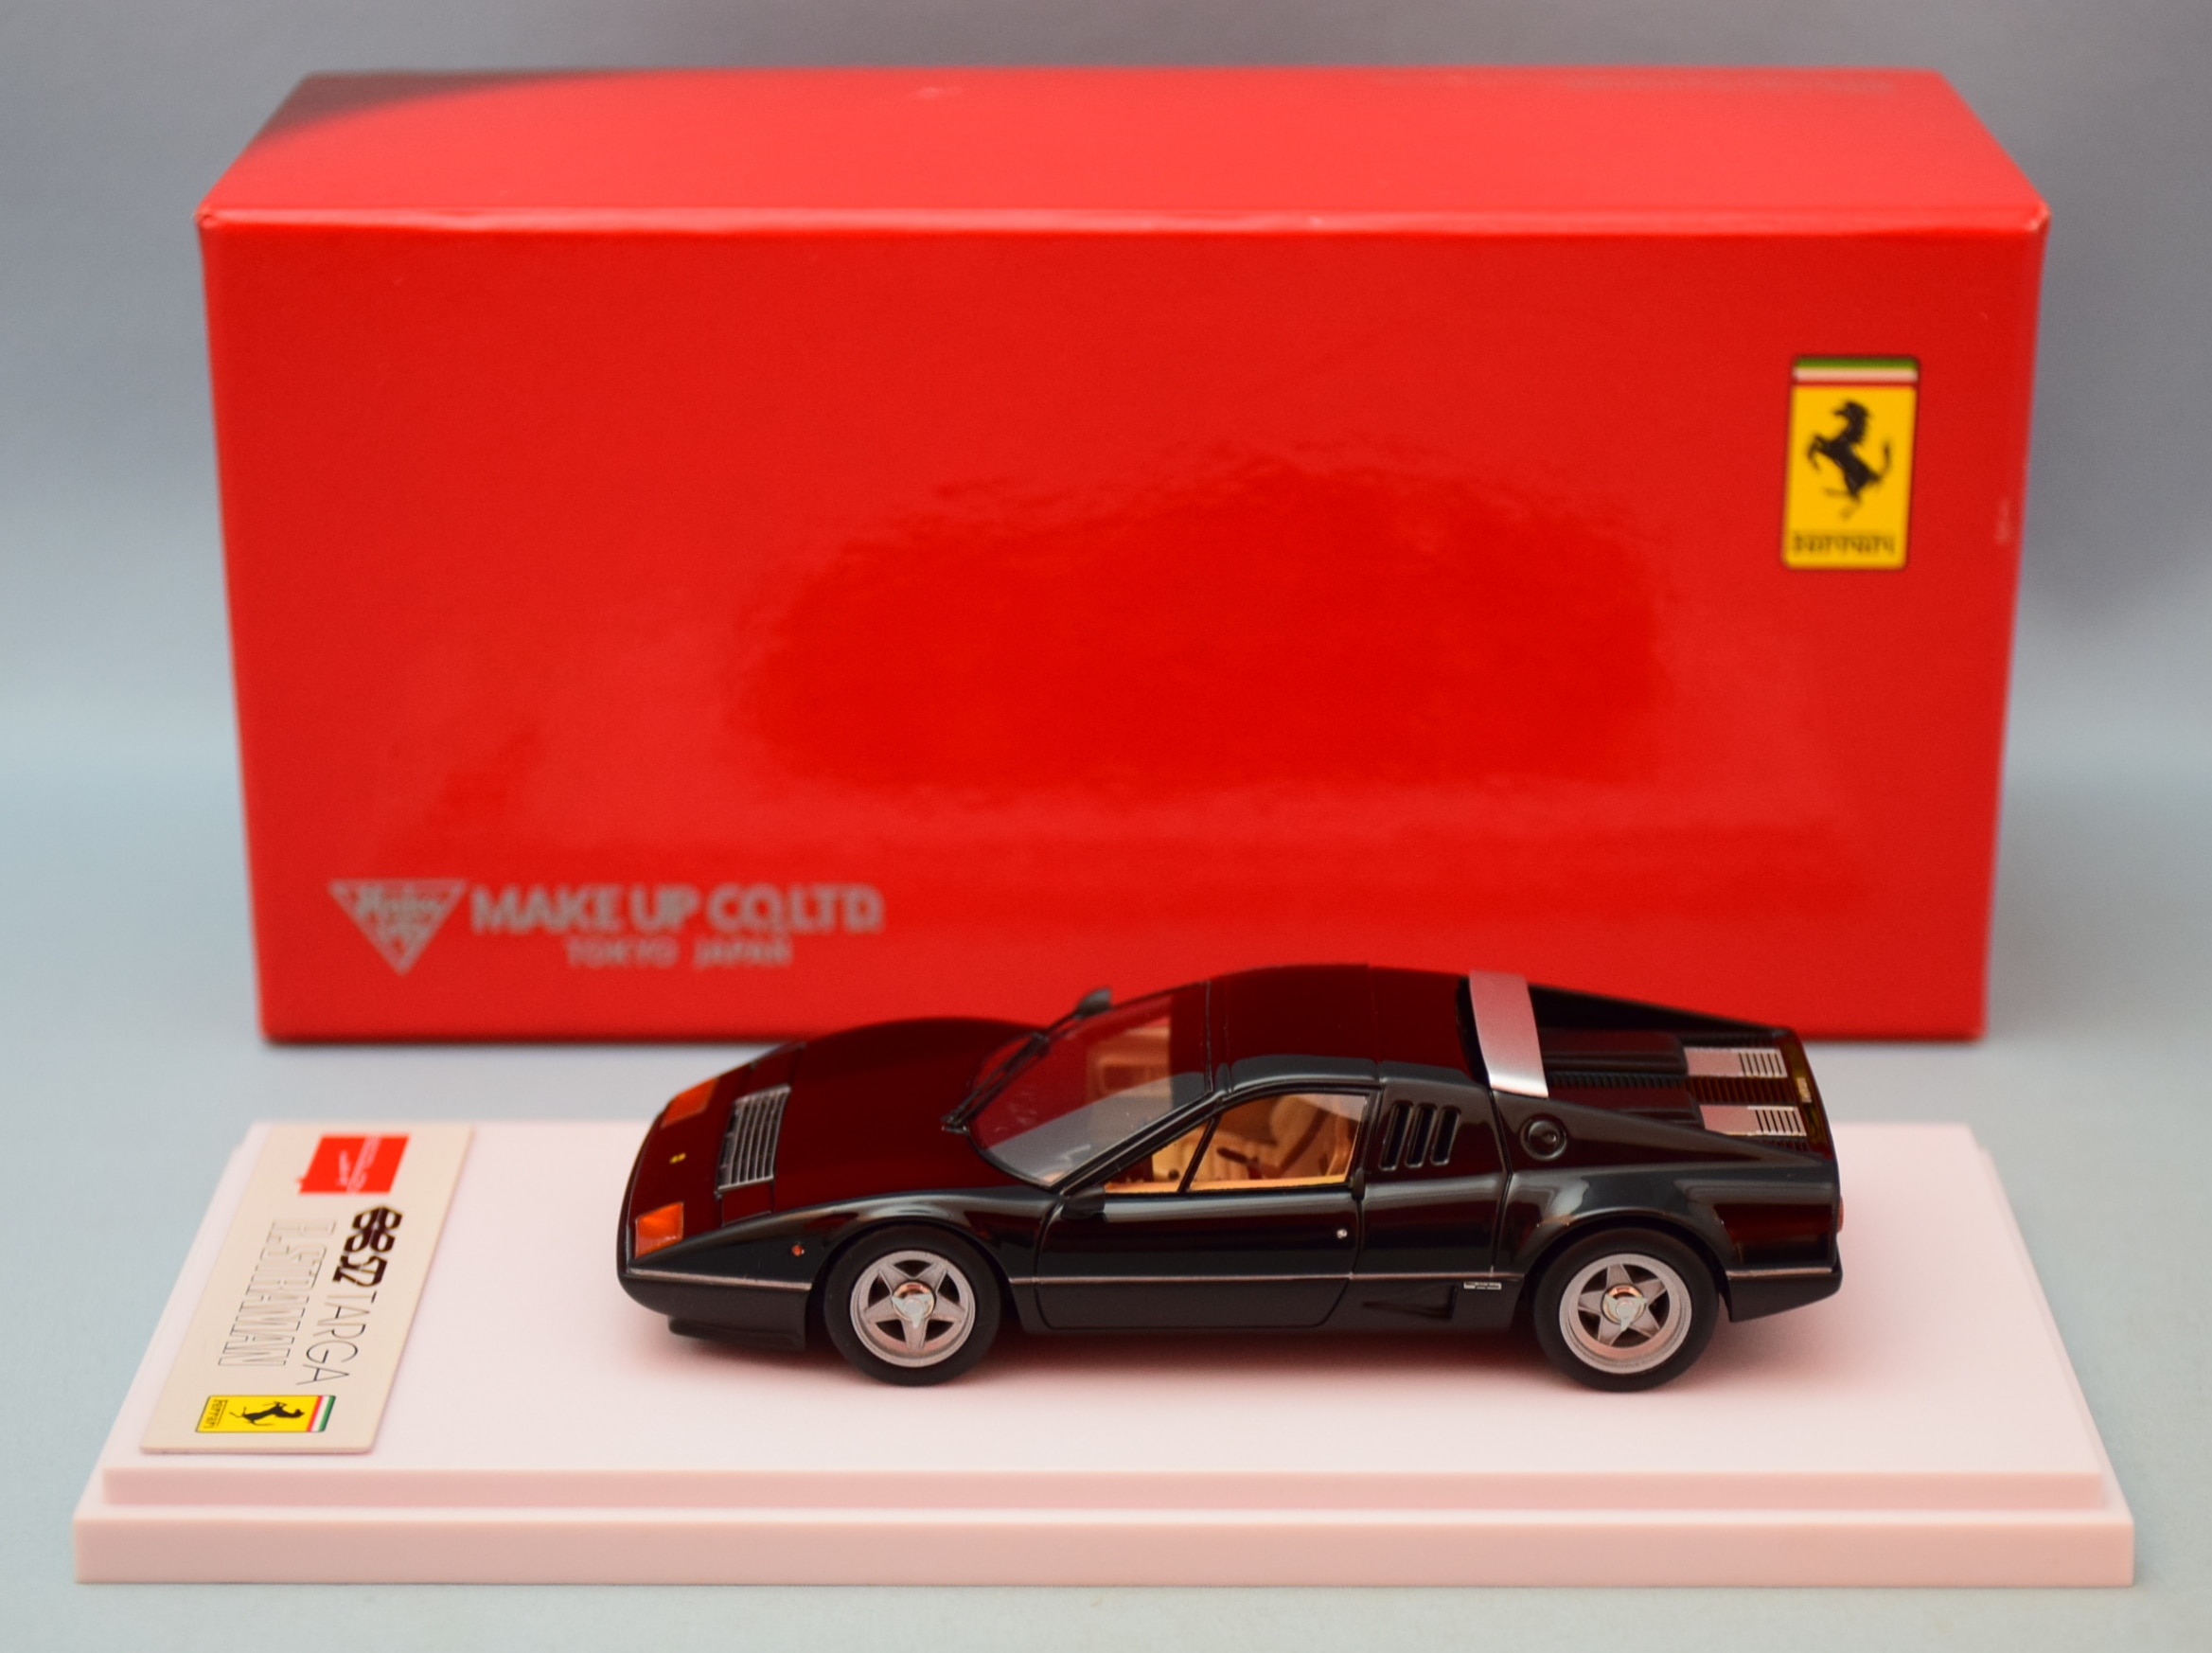 販売公式★激レア絶版★Make Up*1/43*Ferrari 156/85 #27 1985 Brazilian GP*Michele Alboreto*フェラーリ≠BBR,MR BBR